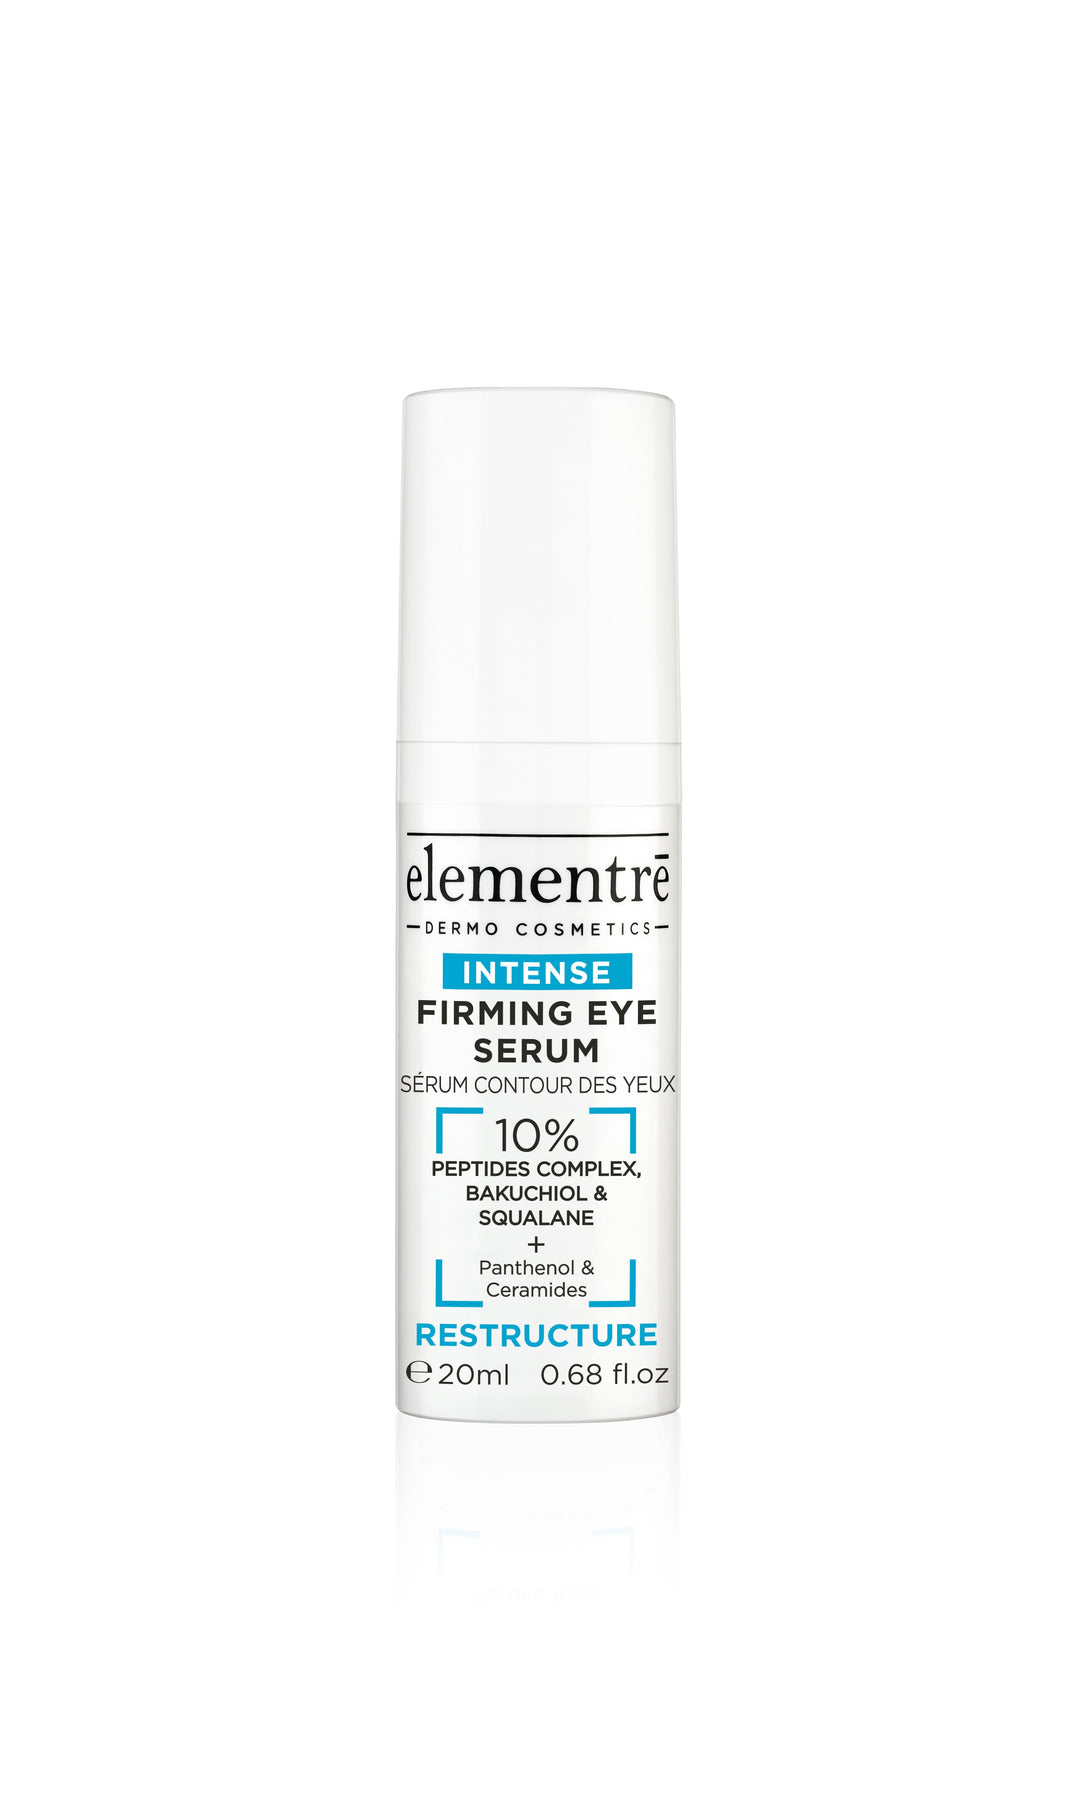 SALE- Elementre Firming Eye Serum (doosje is beschadigd, THT is 05/25)